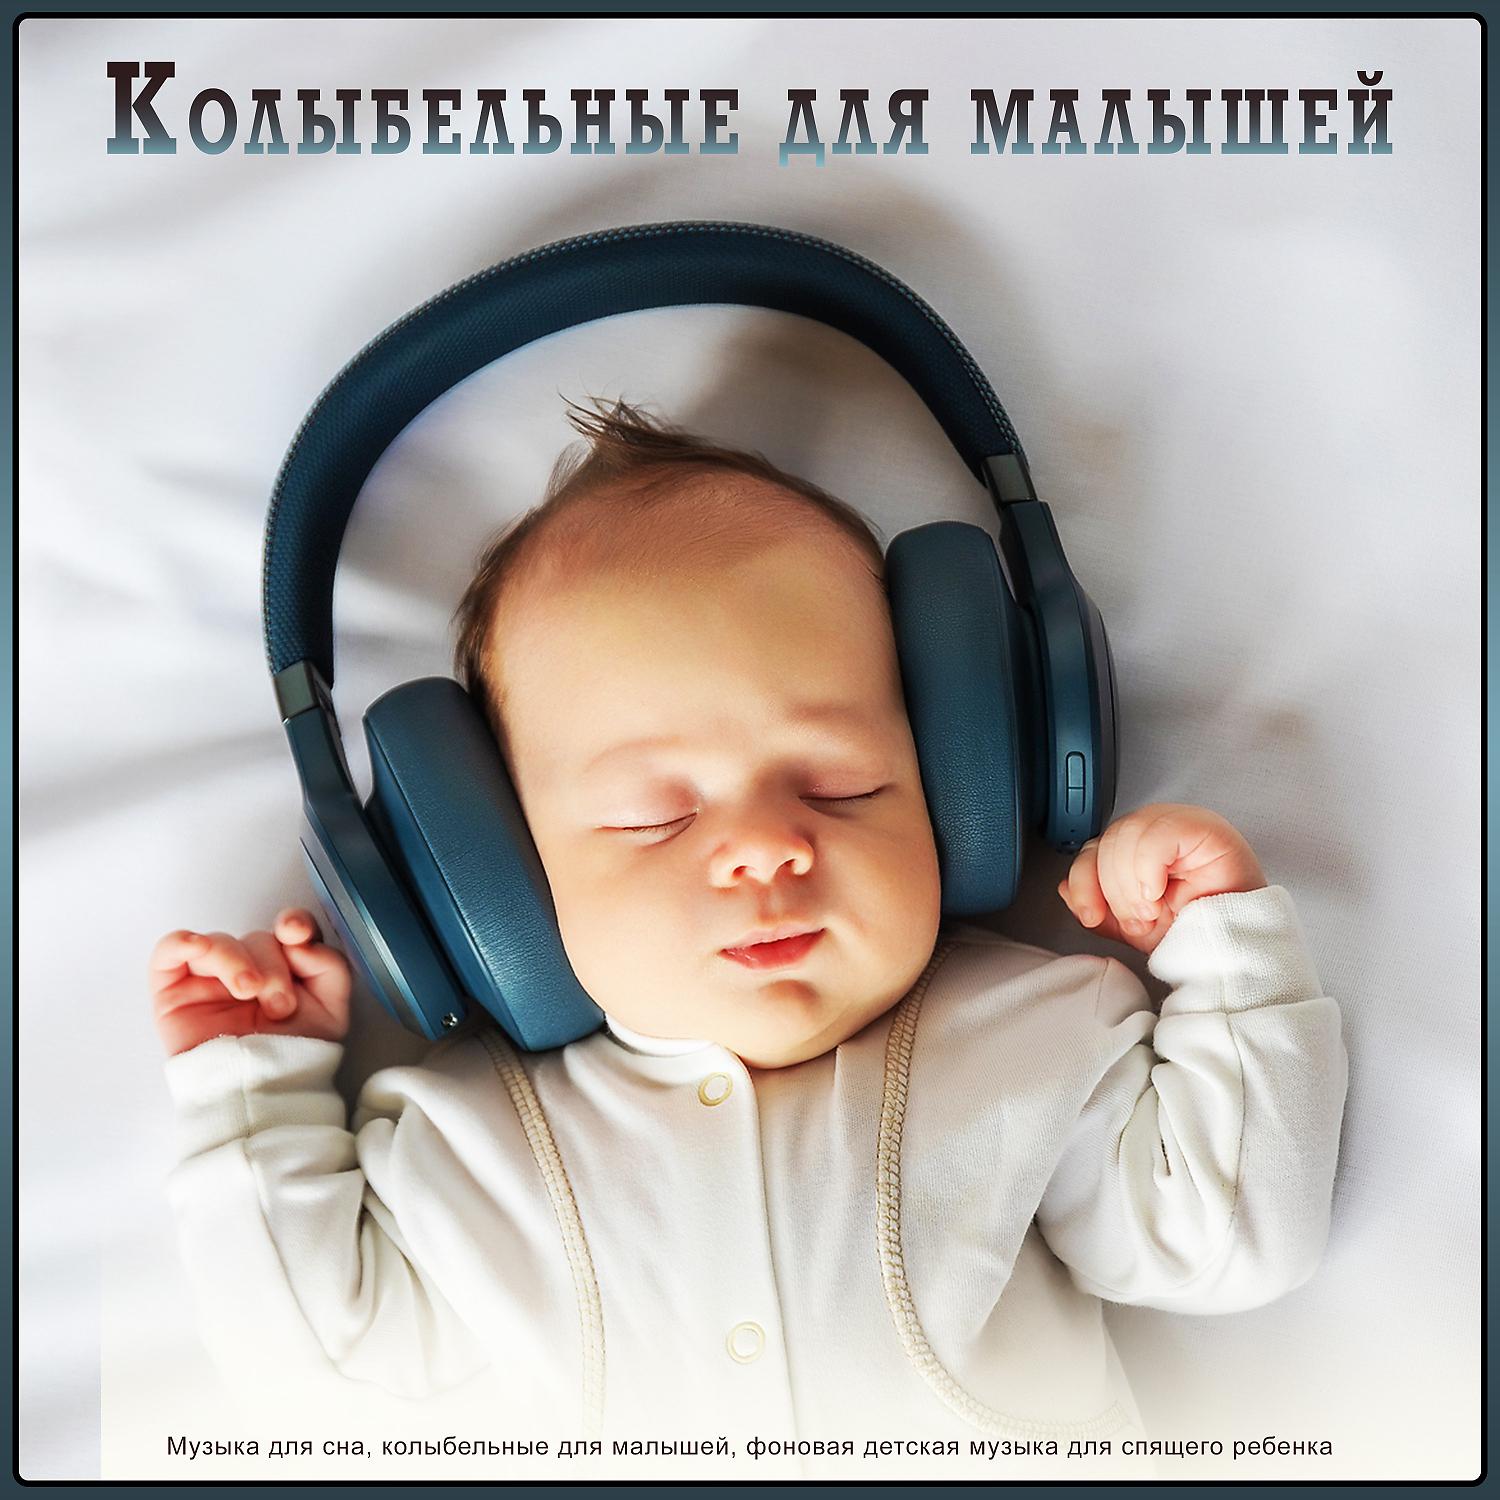 Колыбельная для сна слушать успокаивающие. Музыка для сна младенца. Музыка для сна для малышей. Мелодии для засыпания малышей. Колыбельная для малышей успокаивающая.